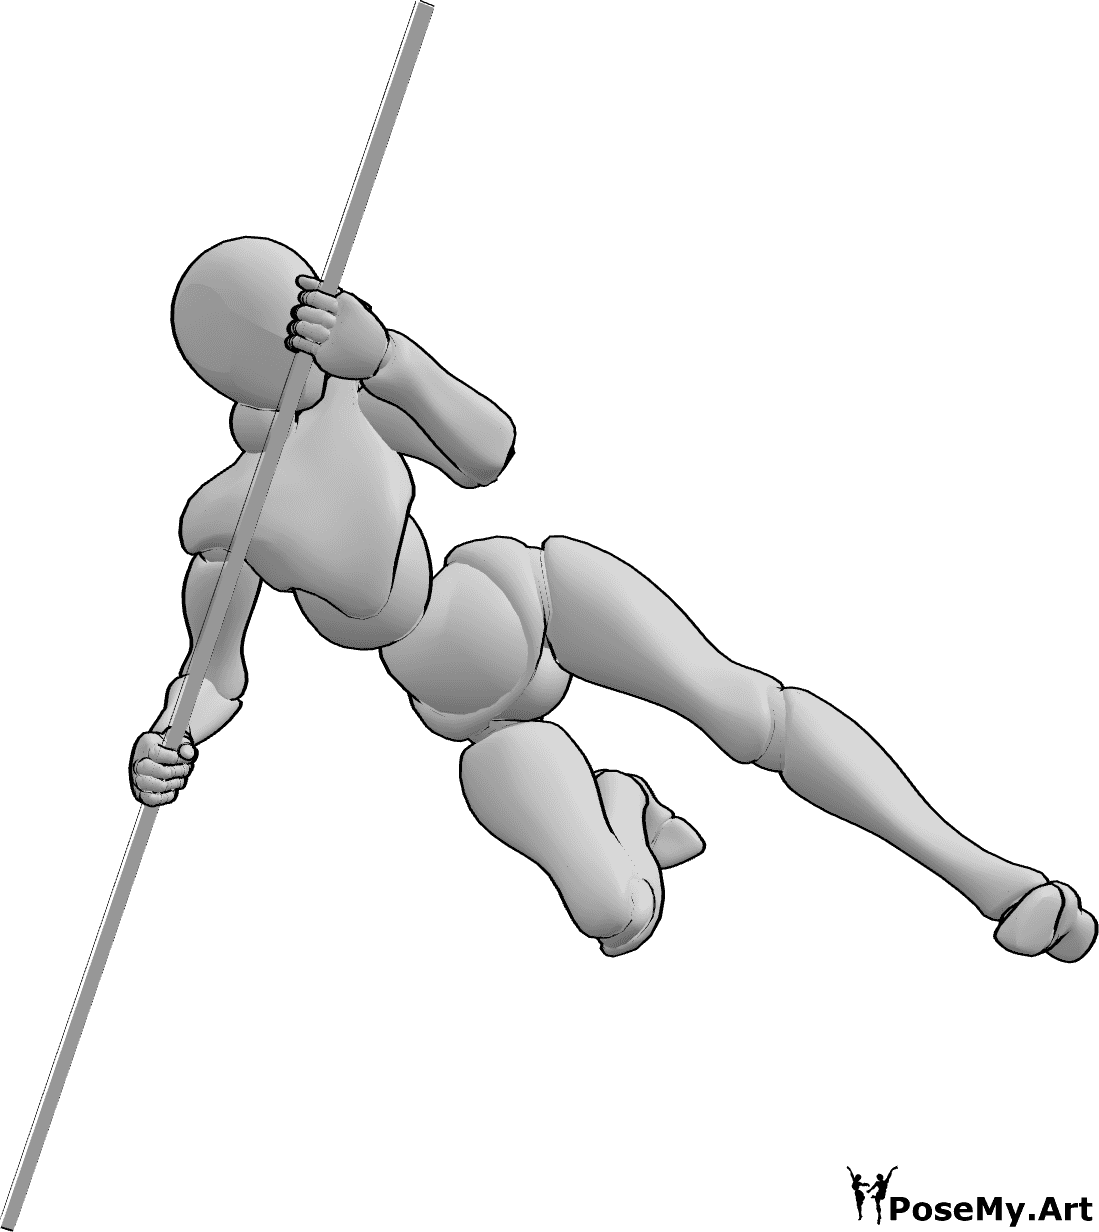 Referência de poses- Pose de saltos feminina - A mulher salta alto e dá pontapés enquanto se apoia na pose do bastão